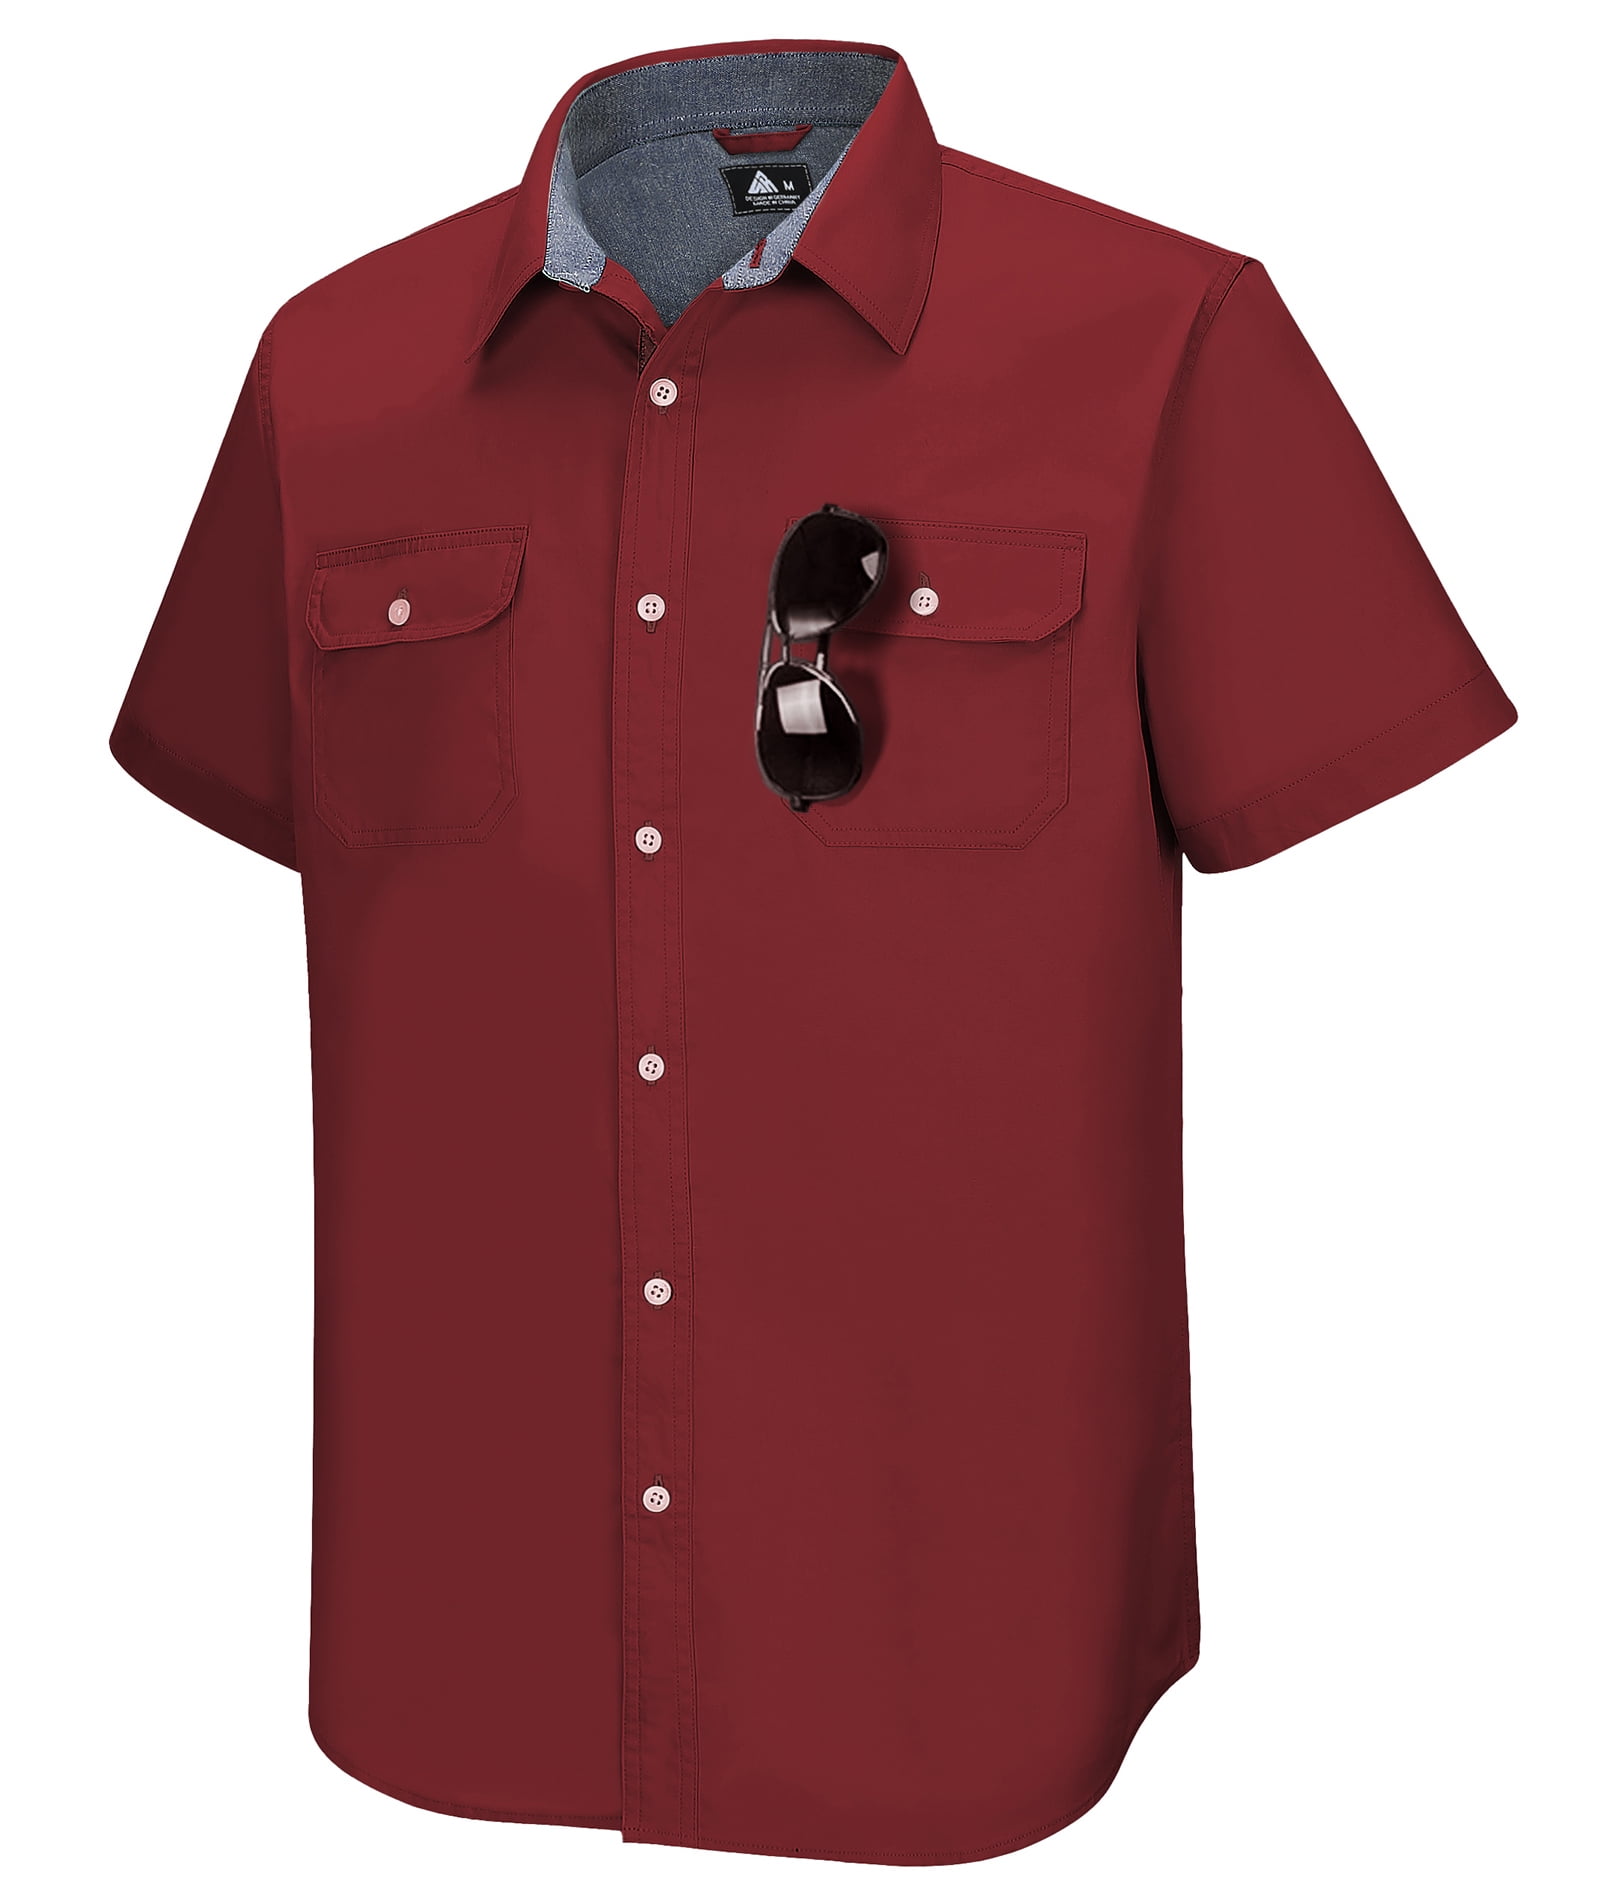 SCODI Solid Color Work Shirt for Men Regular Fit Short Sleeve Casual ...